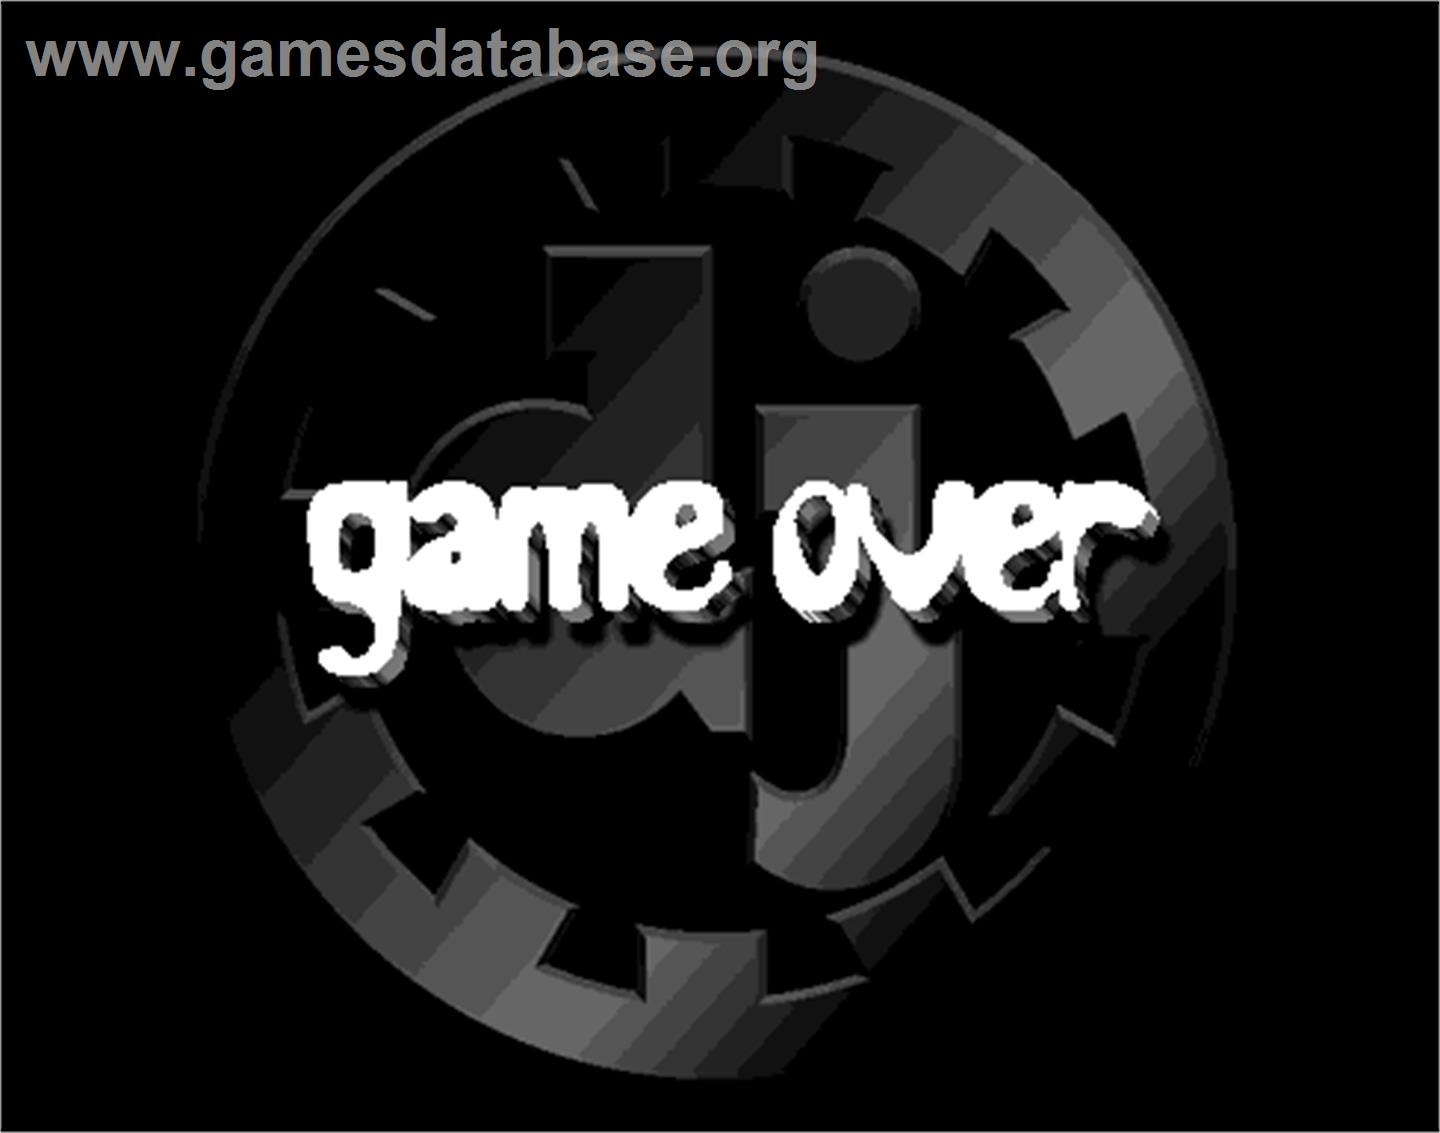 beatmania - Arcade - Artwork - Game Over Screen